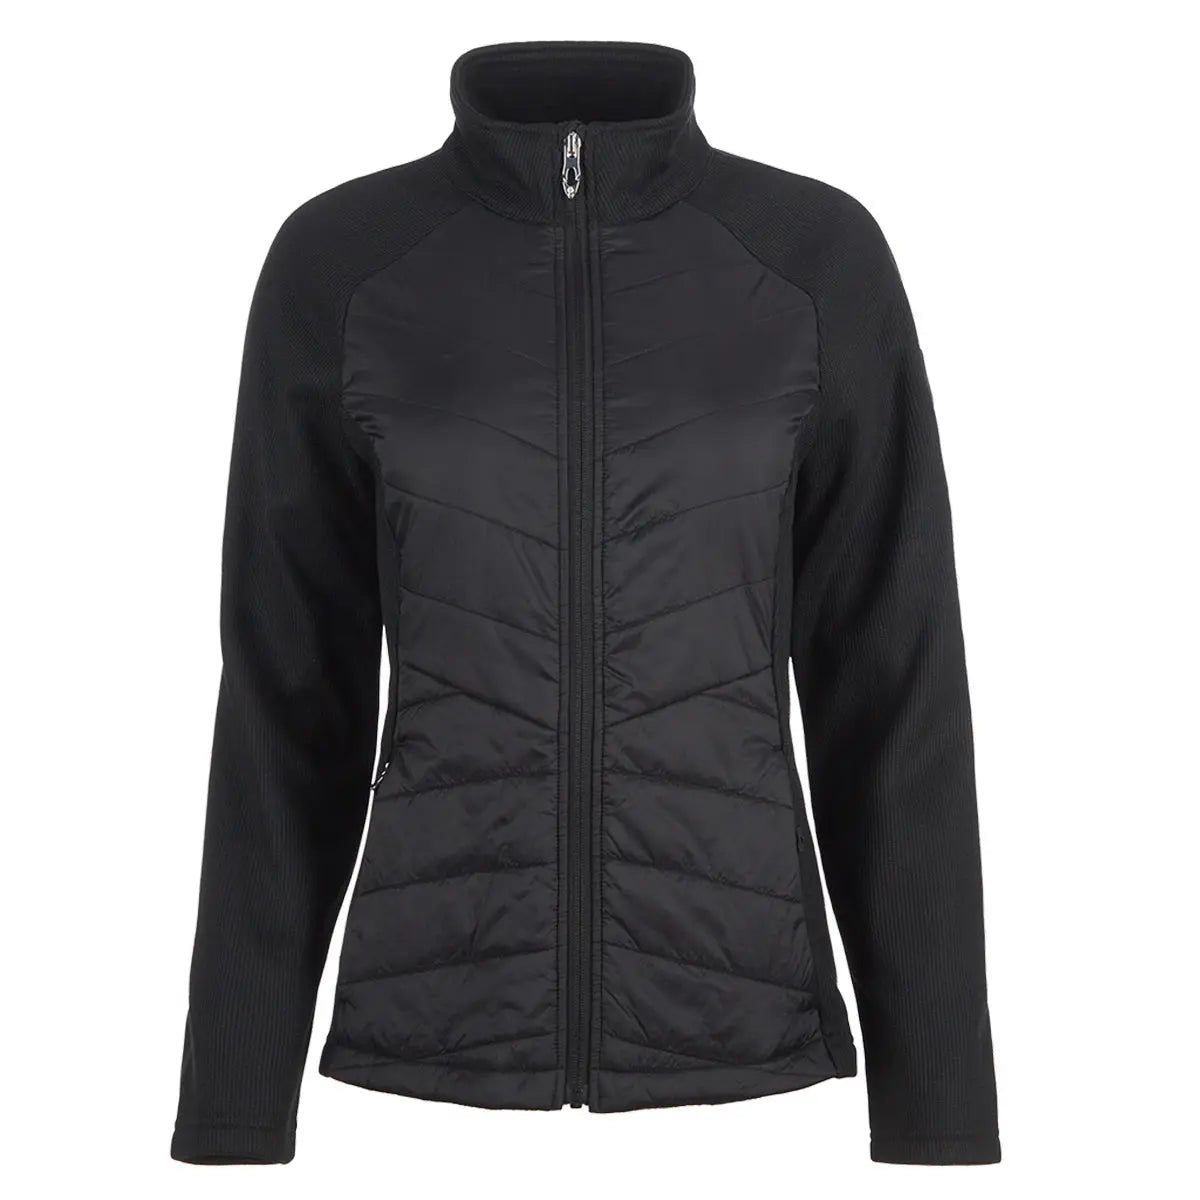 Spyder Bella Full Zip Jacket - Women's, Black, Large, — Womens